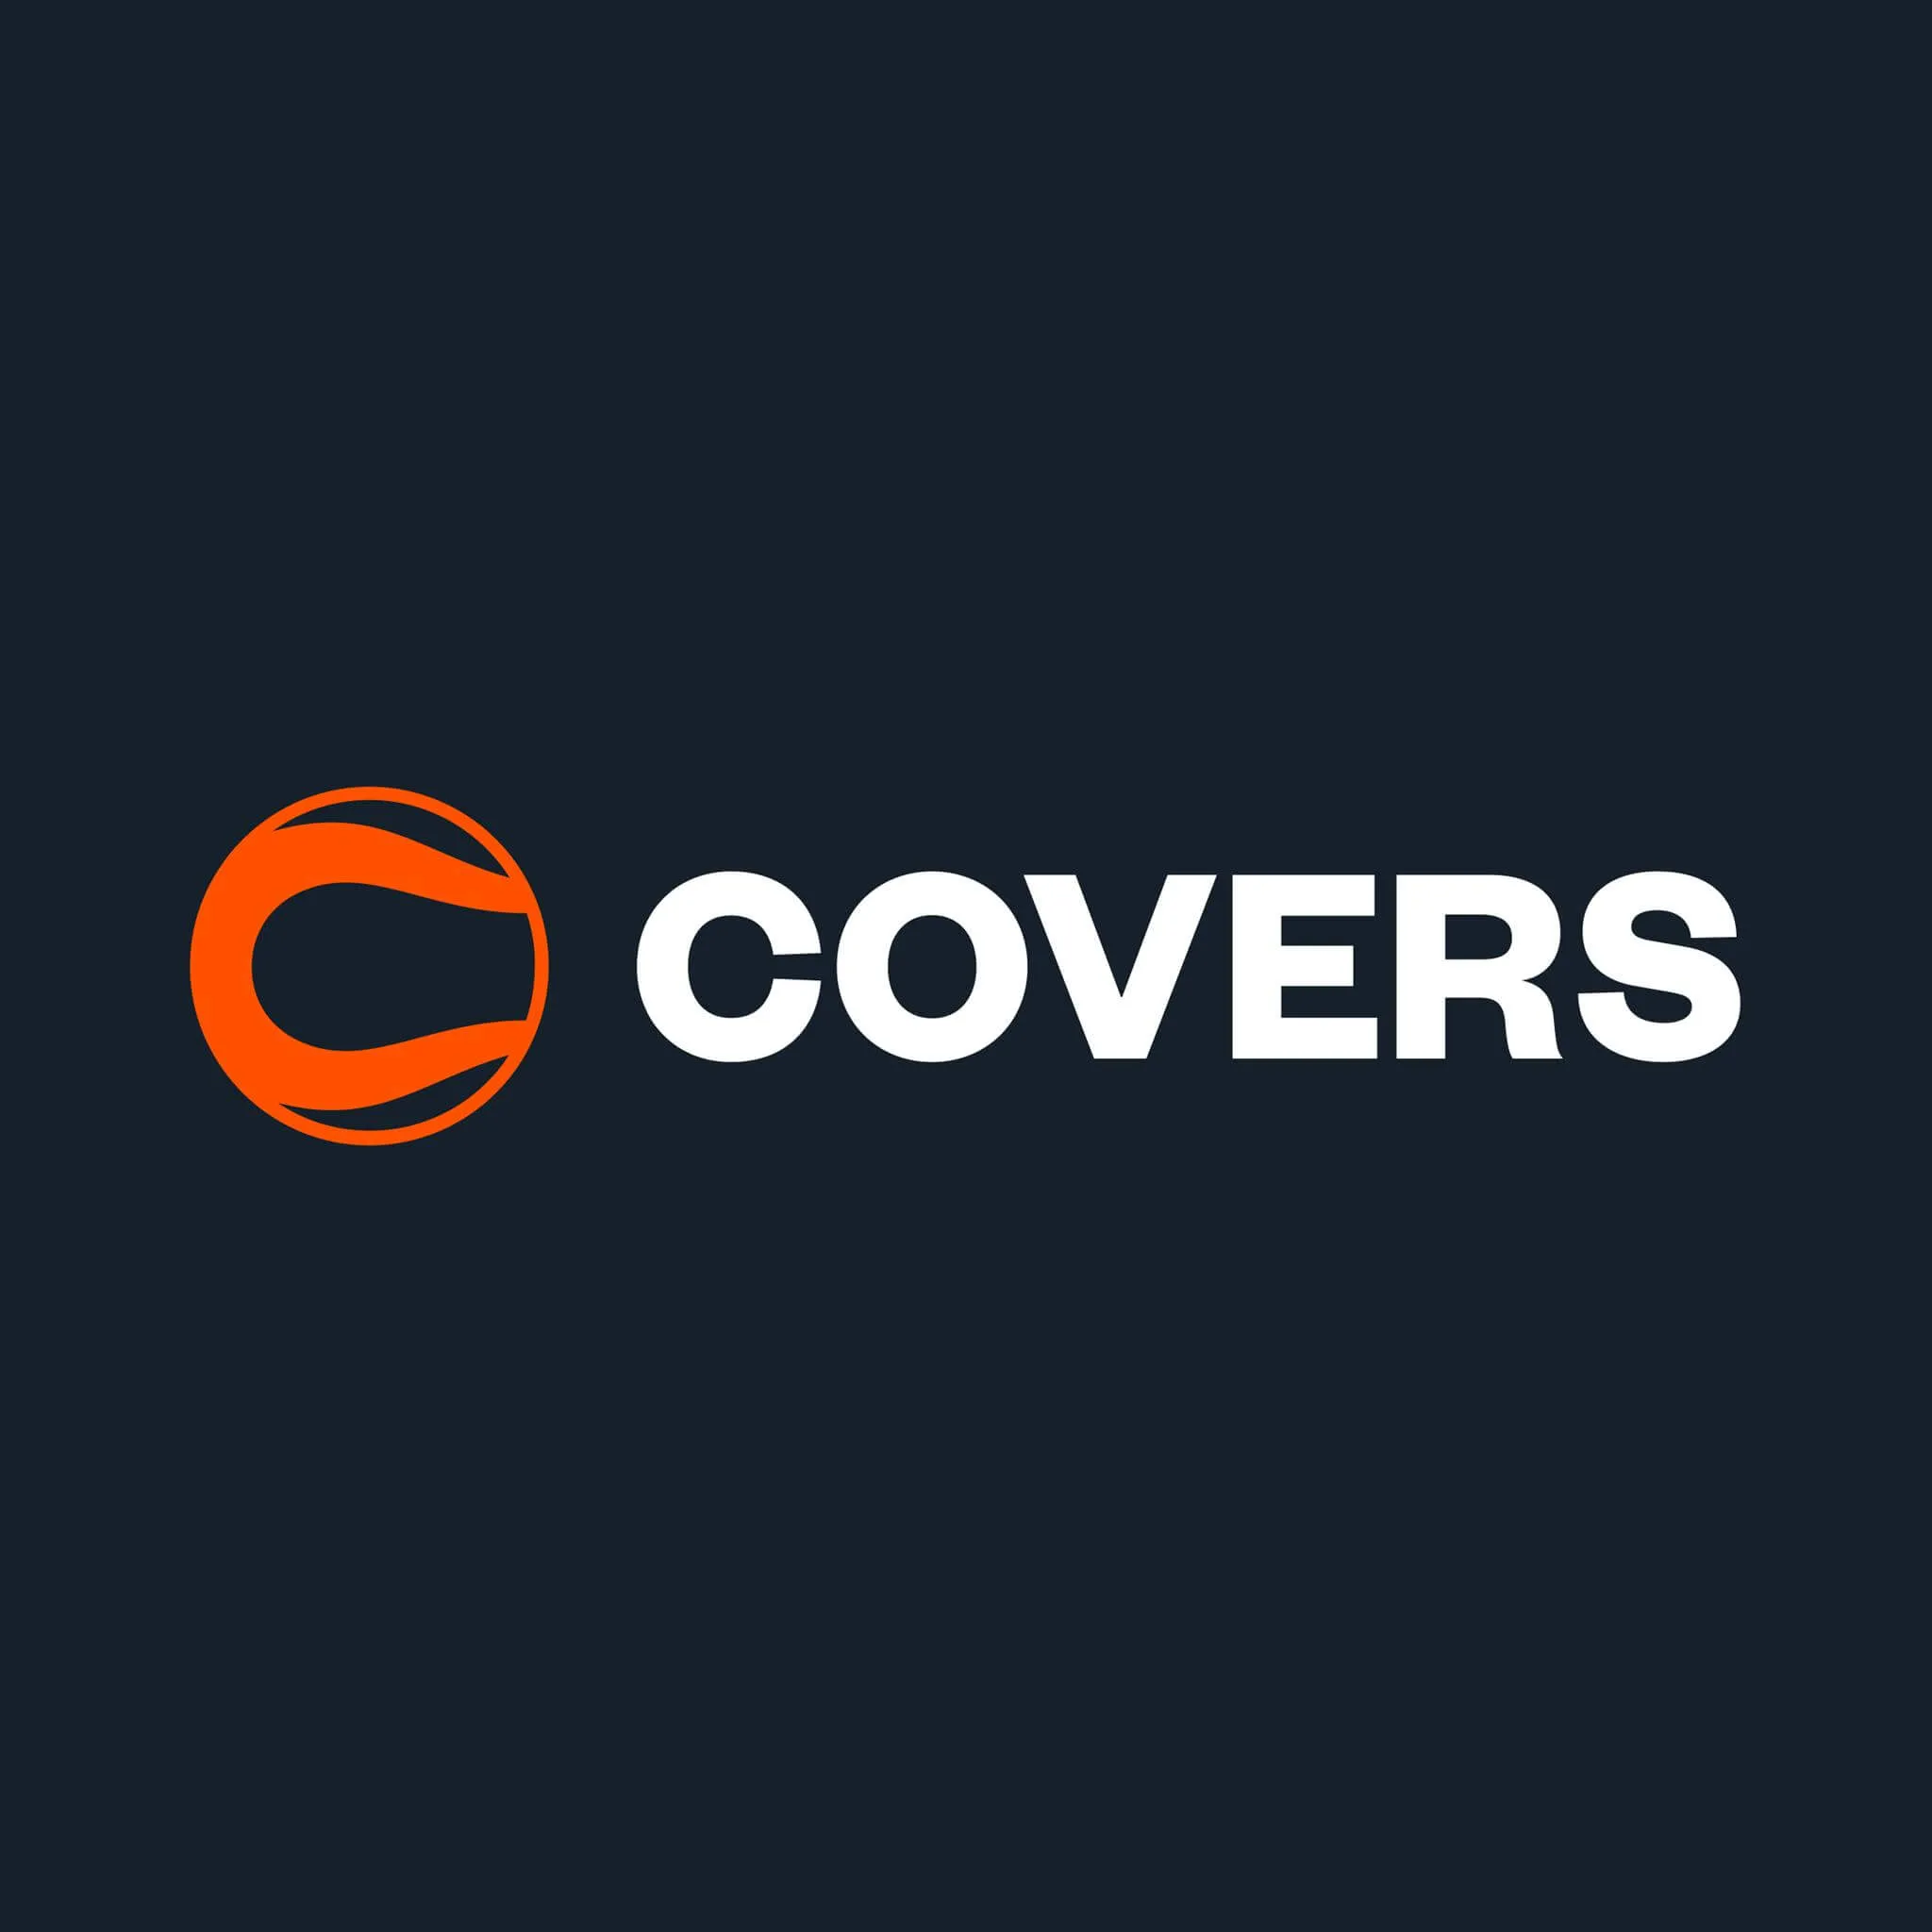 Golden Hearts Promo Code: COVERSBONUS for 250K GC + 500 SC